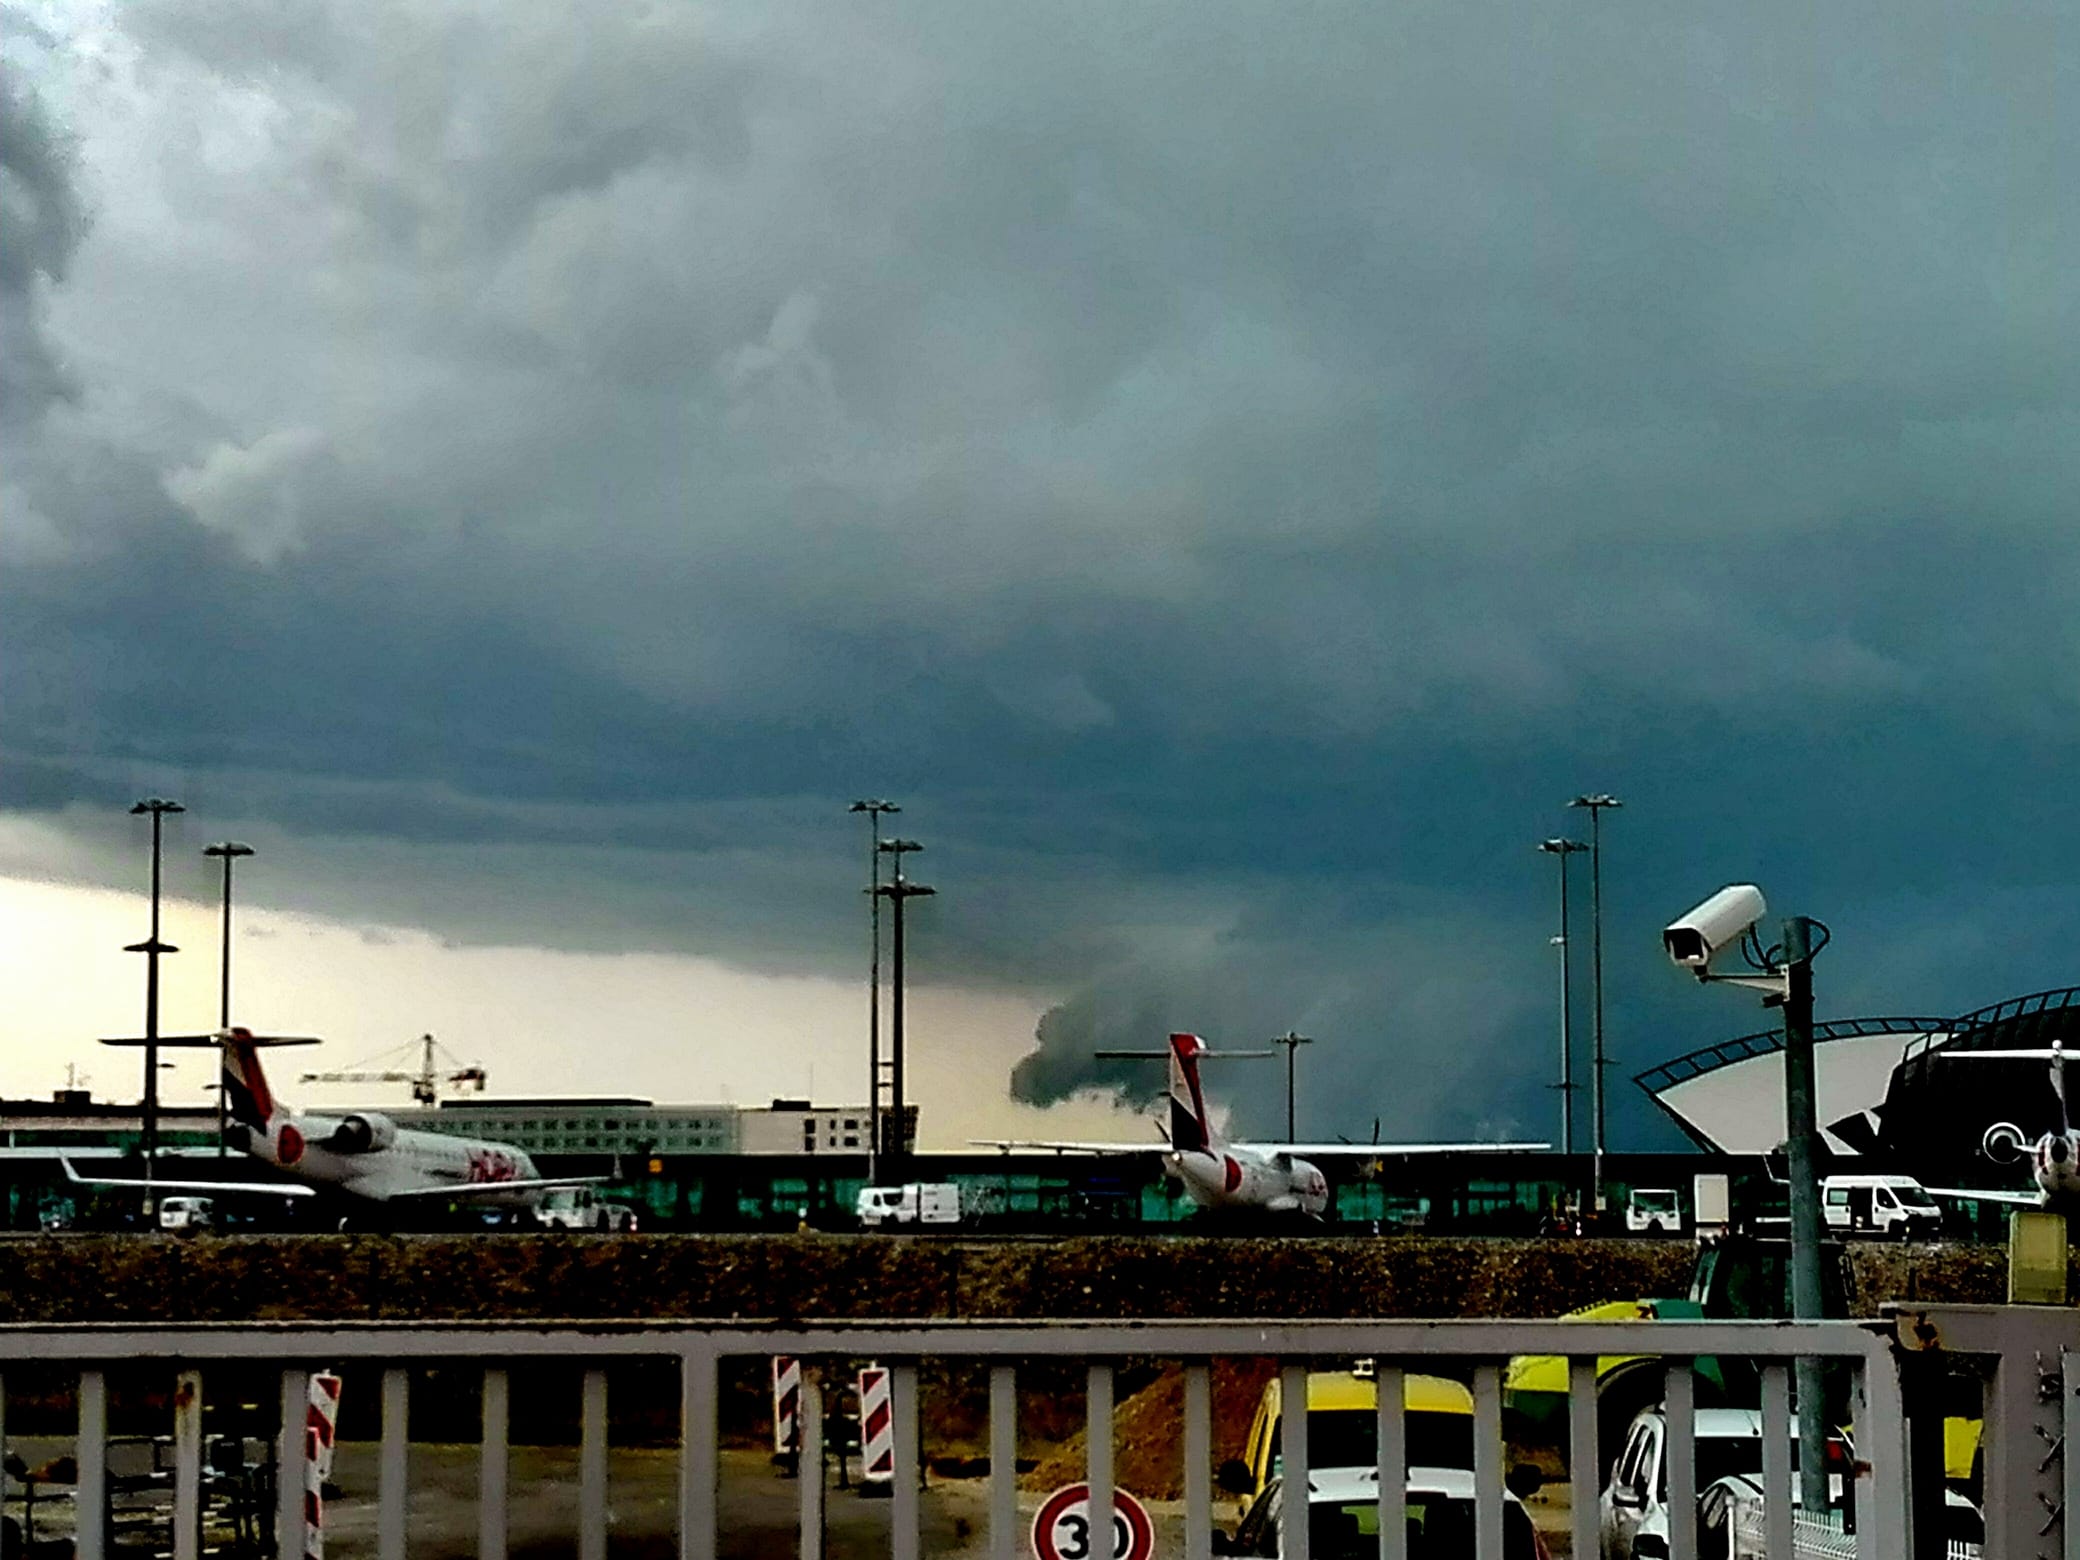 Cellule orageuse en approche au Sud de l'aéroport de Lyon Saint Exupéry - 10/07/2017 16:27 - Laurent FALLOURD